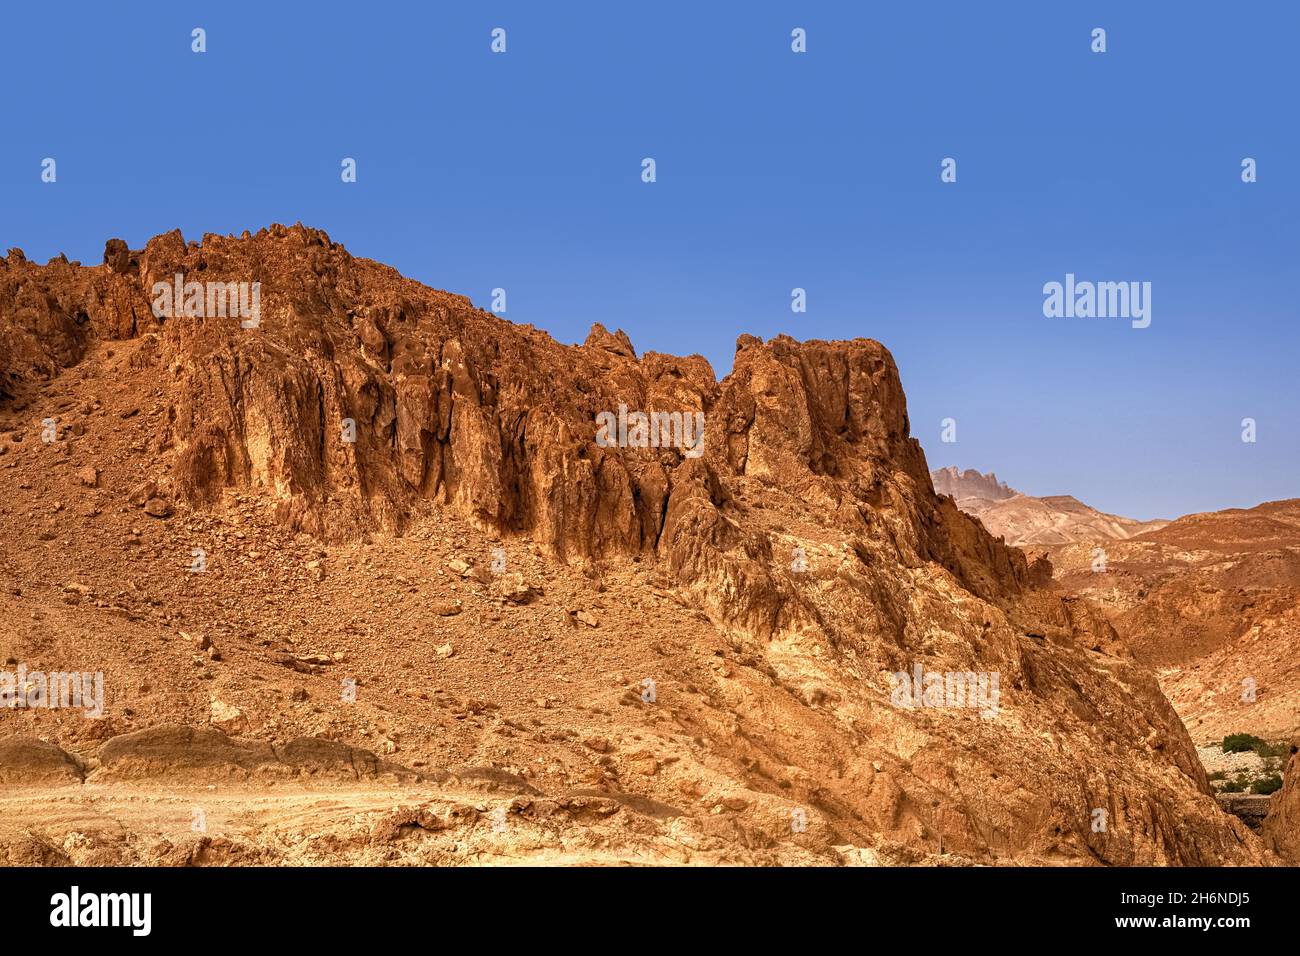 Mountain oasis Chebik, Sahara Desert. View of the Atlas mountain range. Tunisia Stock Photo